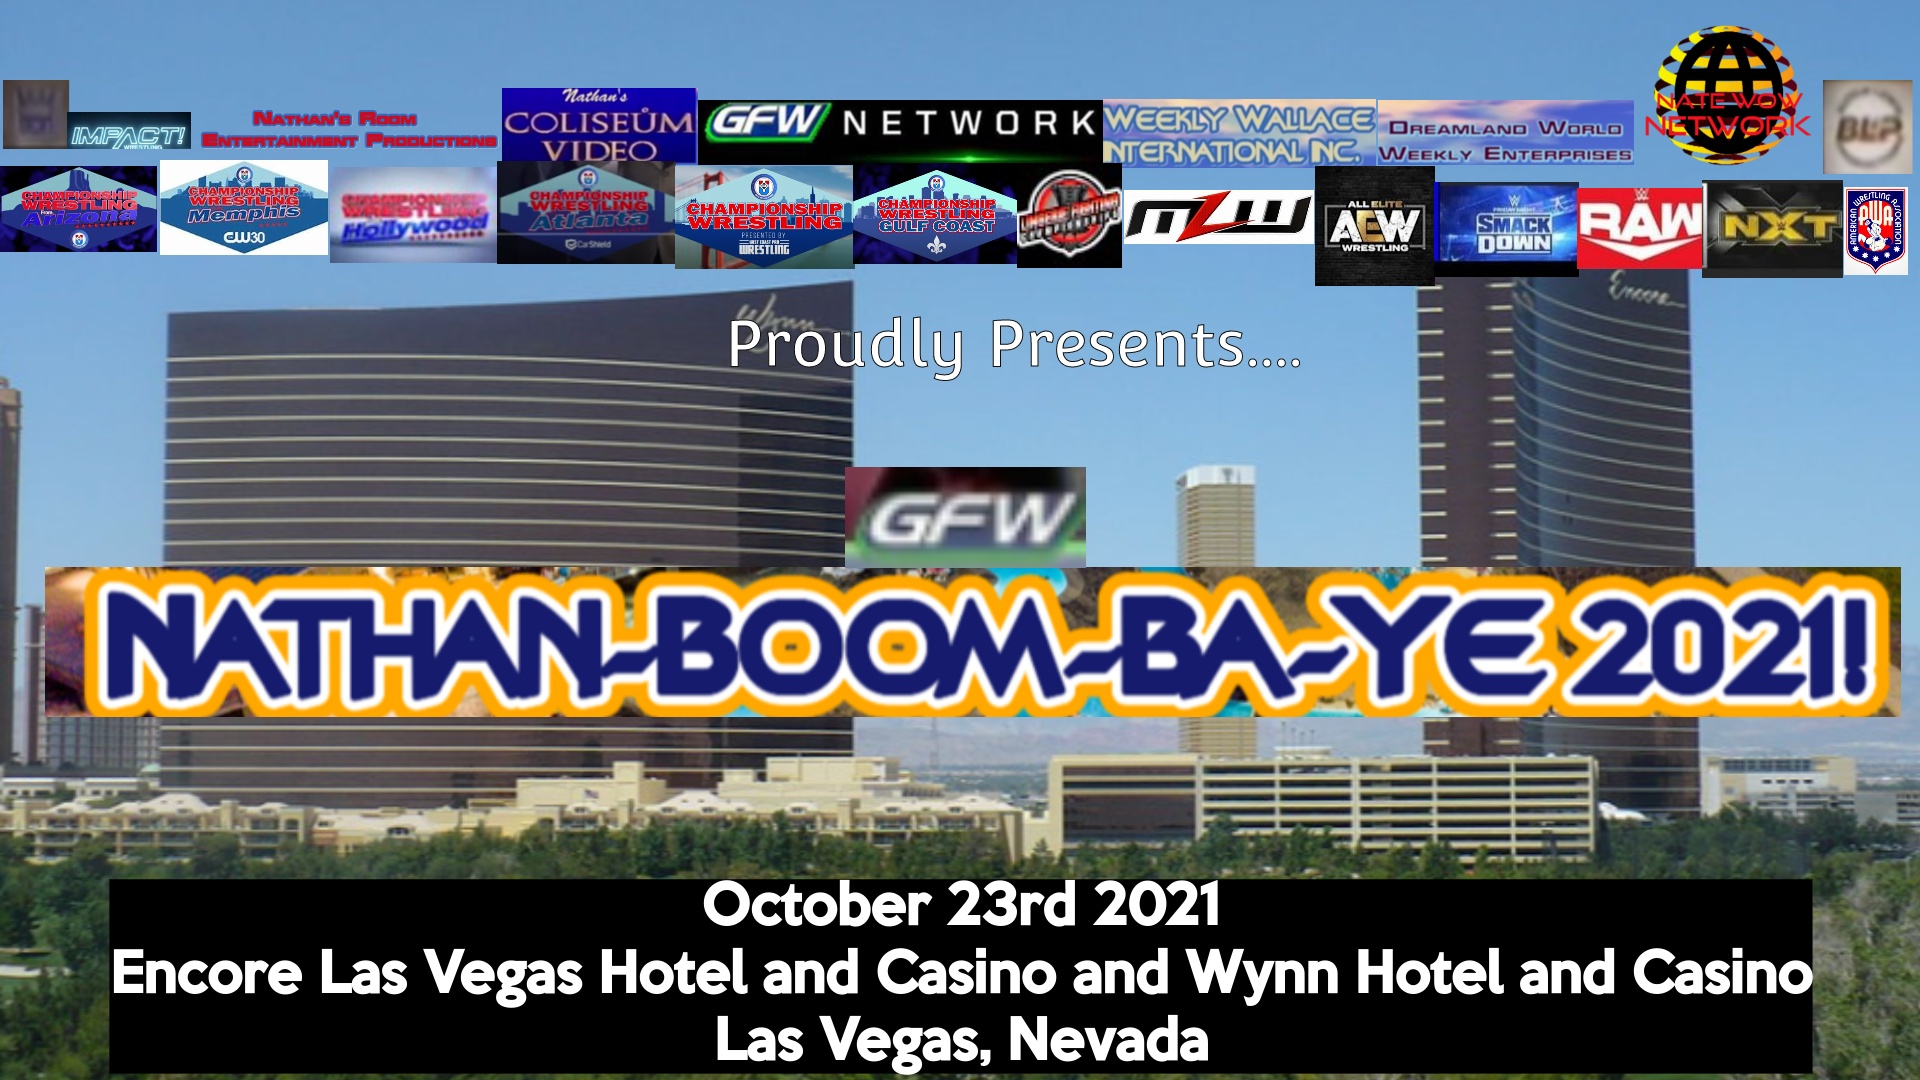 Nathan-Boom-Ba-Ye 2021 in Las Vegas.jpg